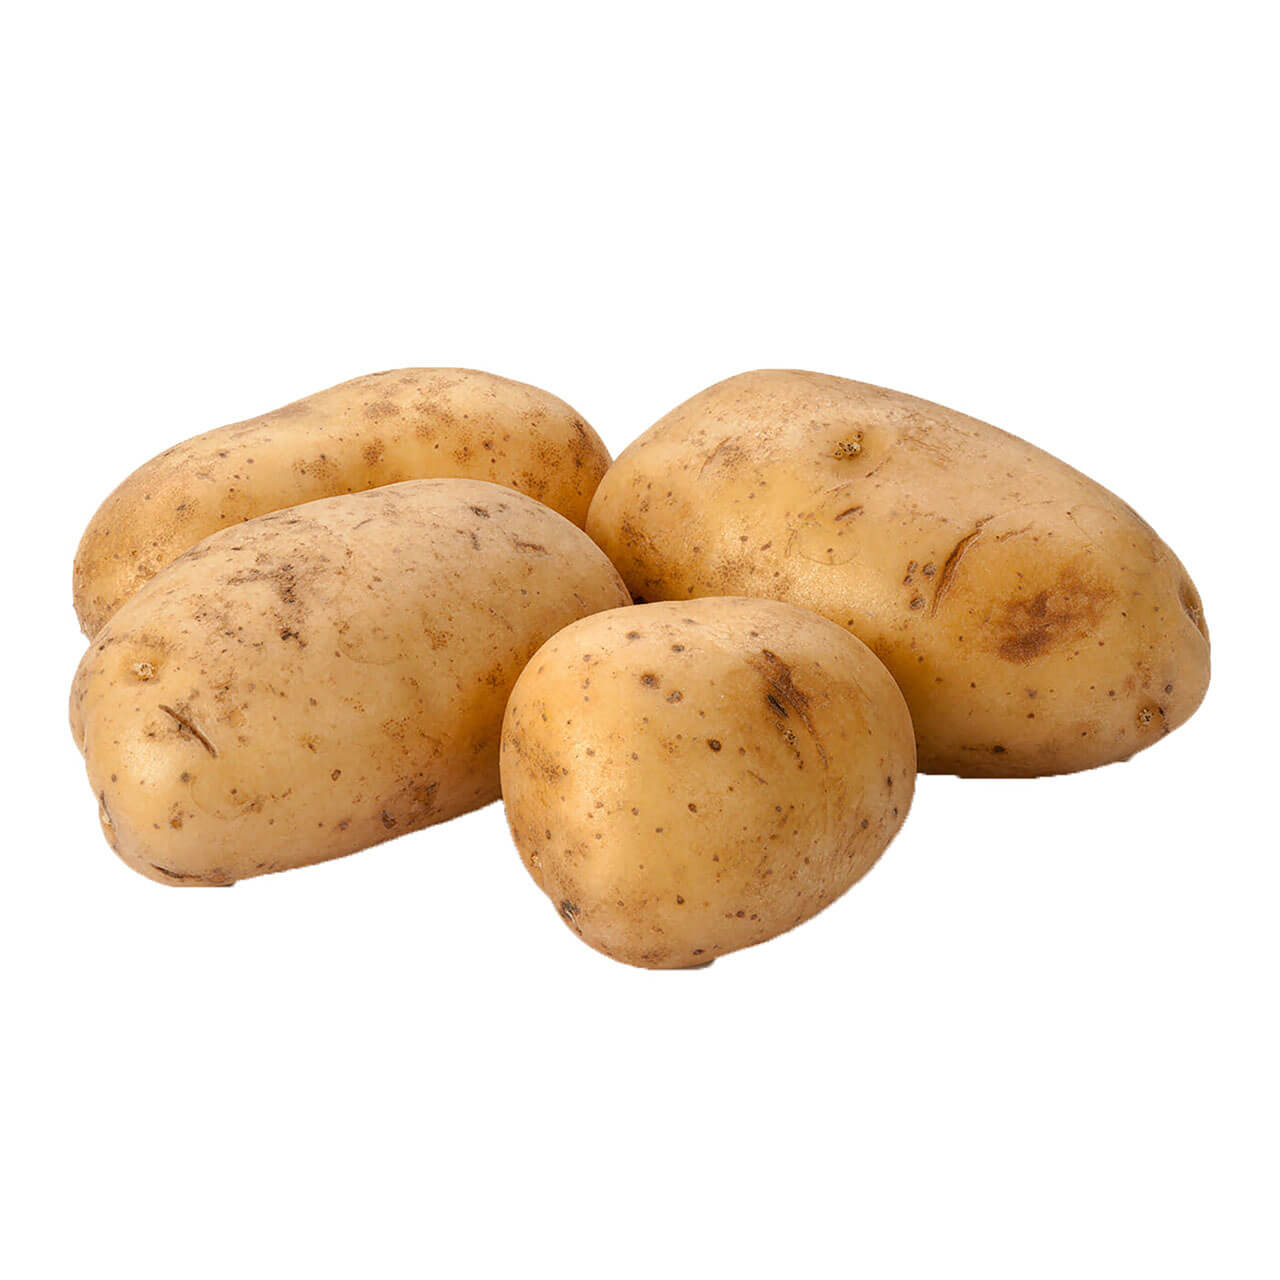 What Is a Yukon Gold Potato?